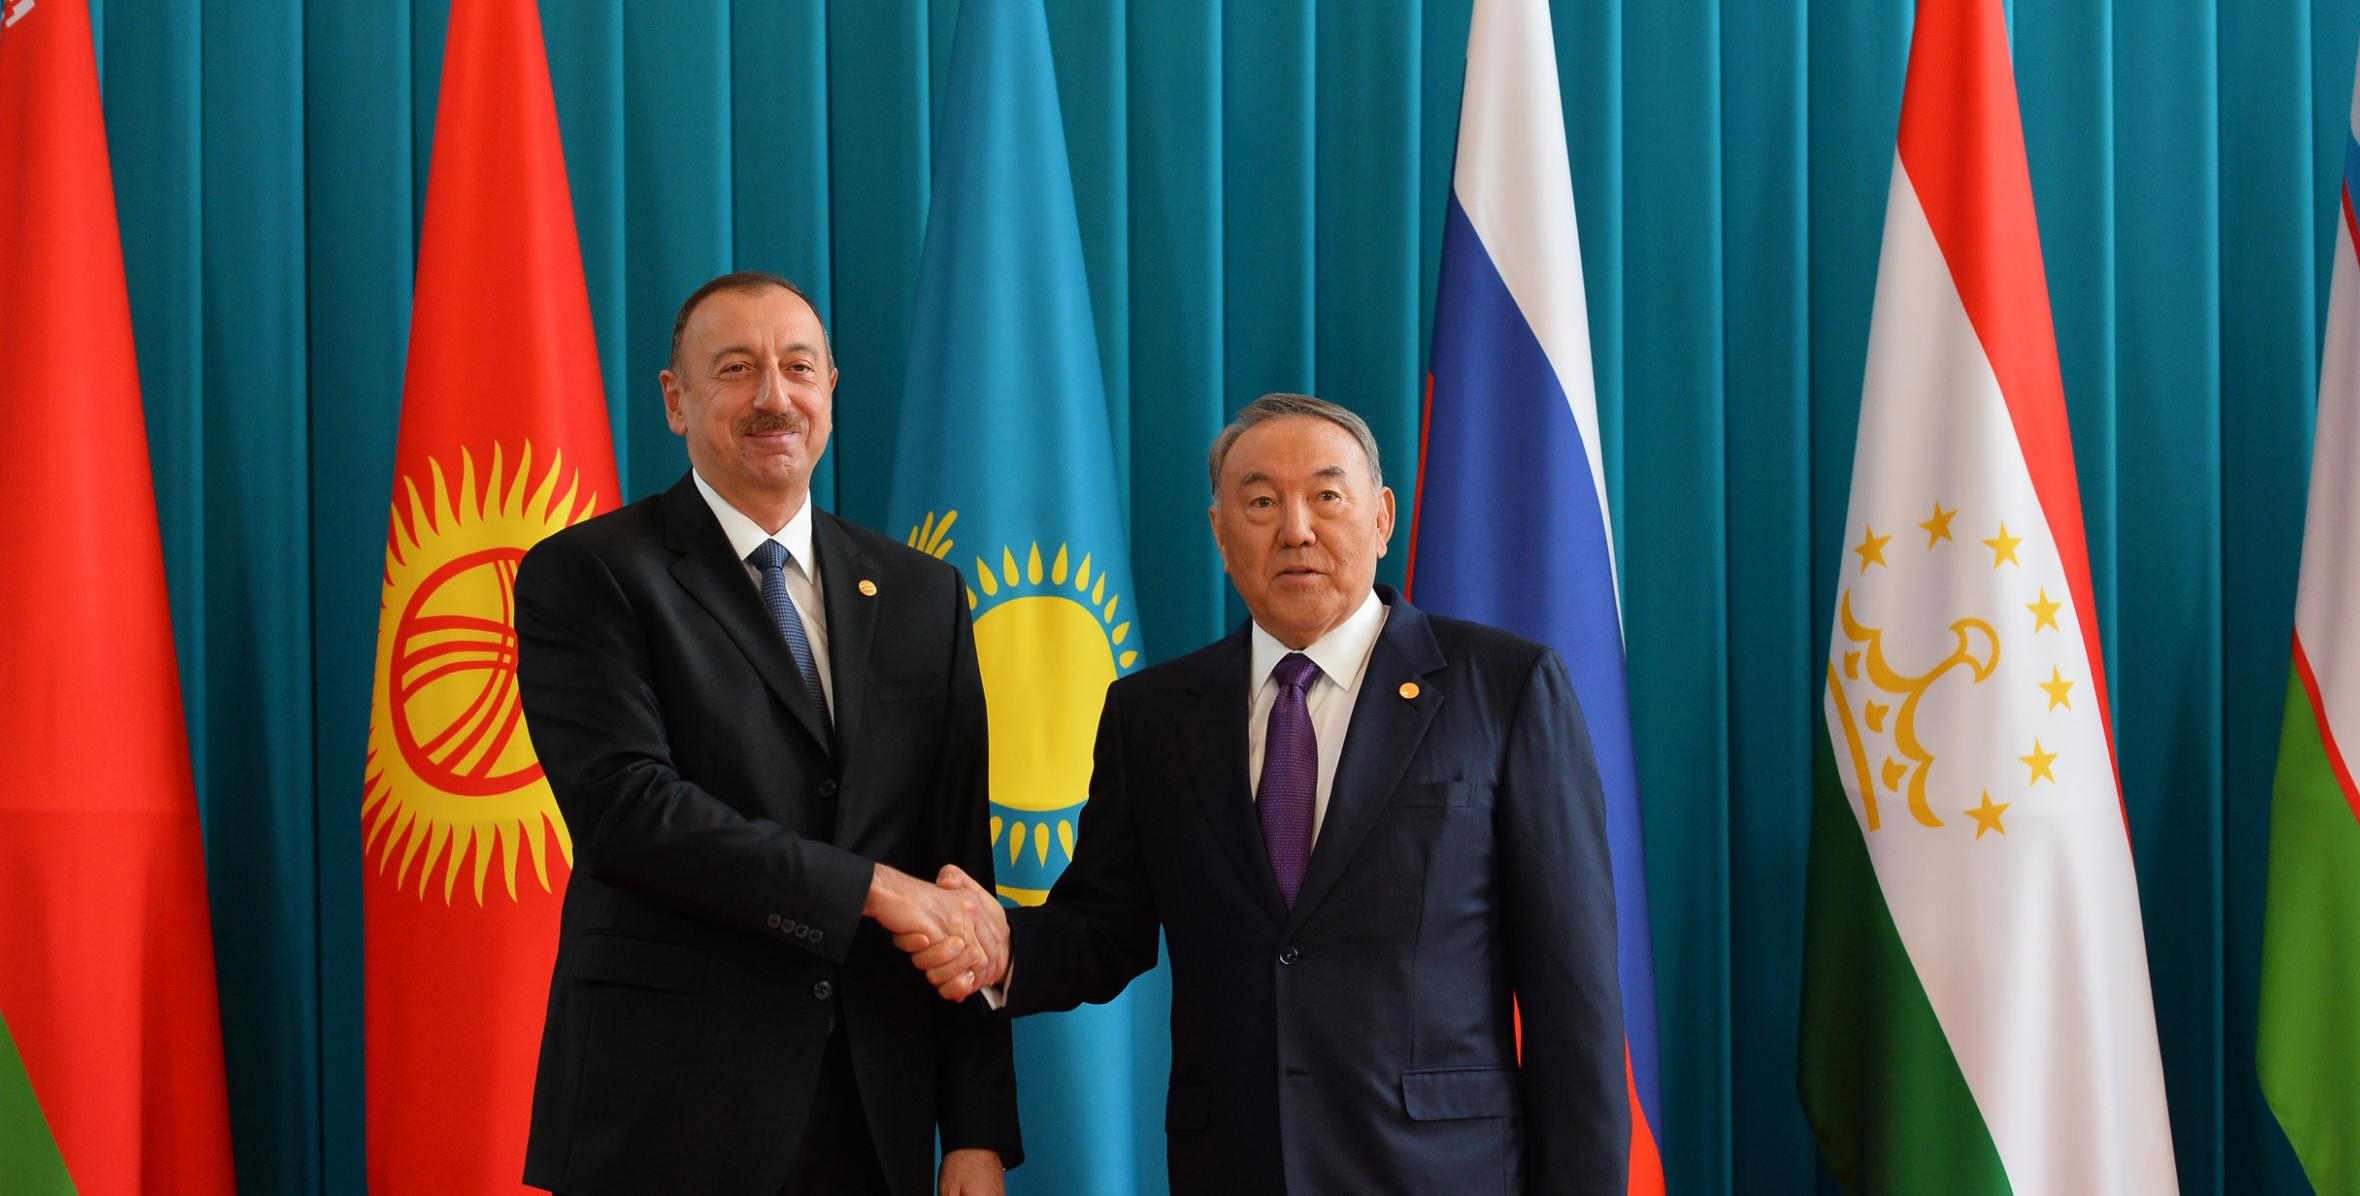 Working visit of Ilham Aliyev to Kazakhstan